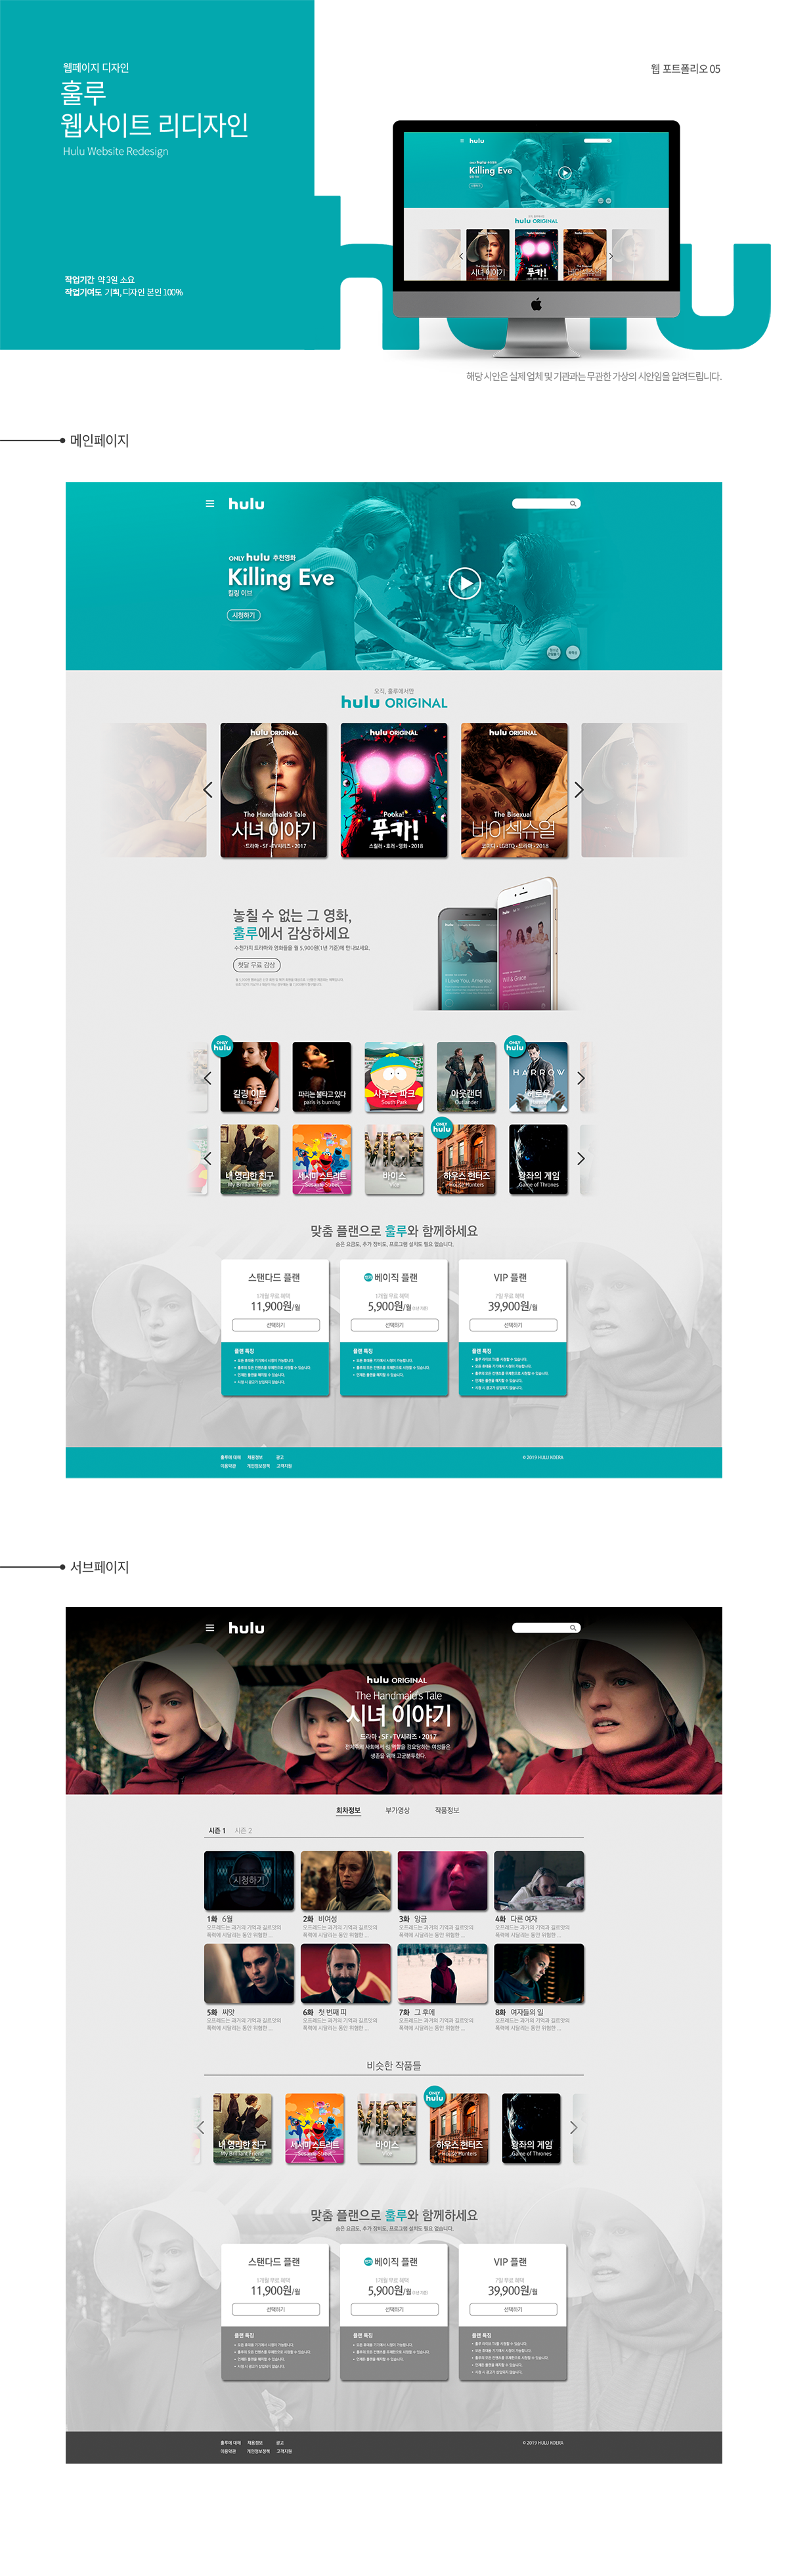 hulu website redesign